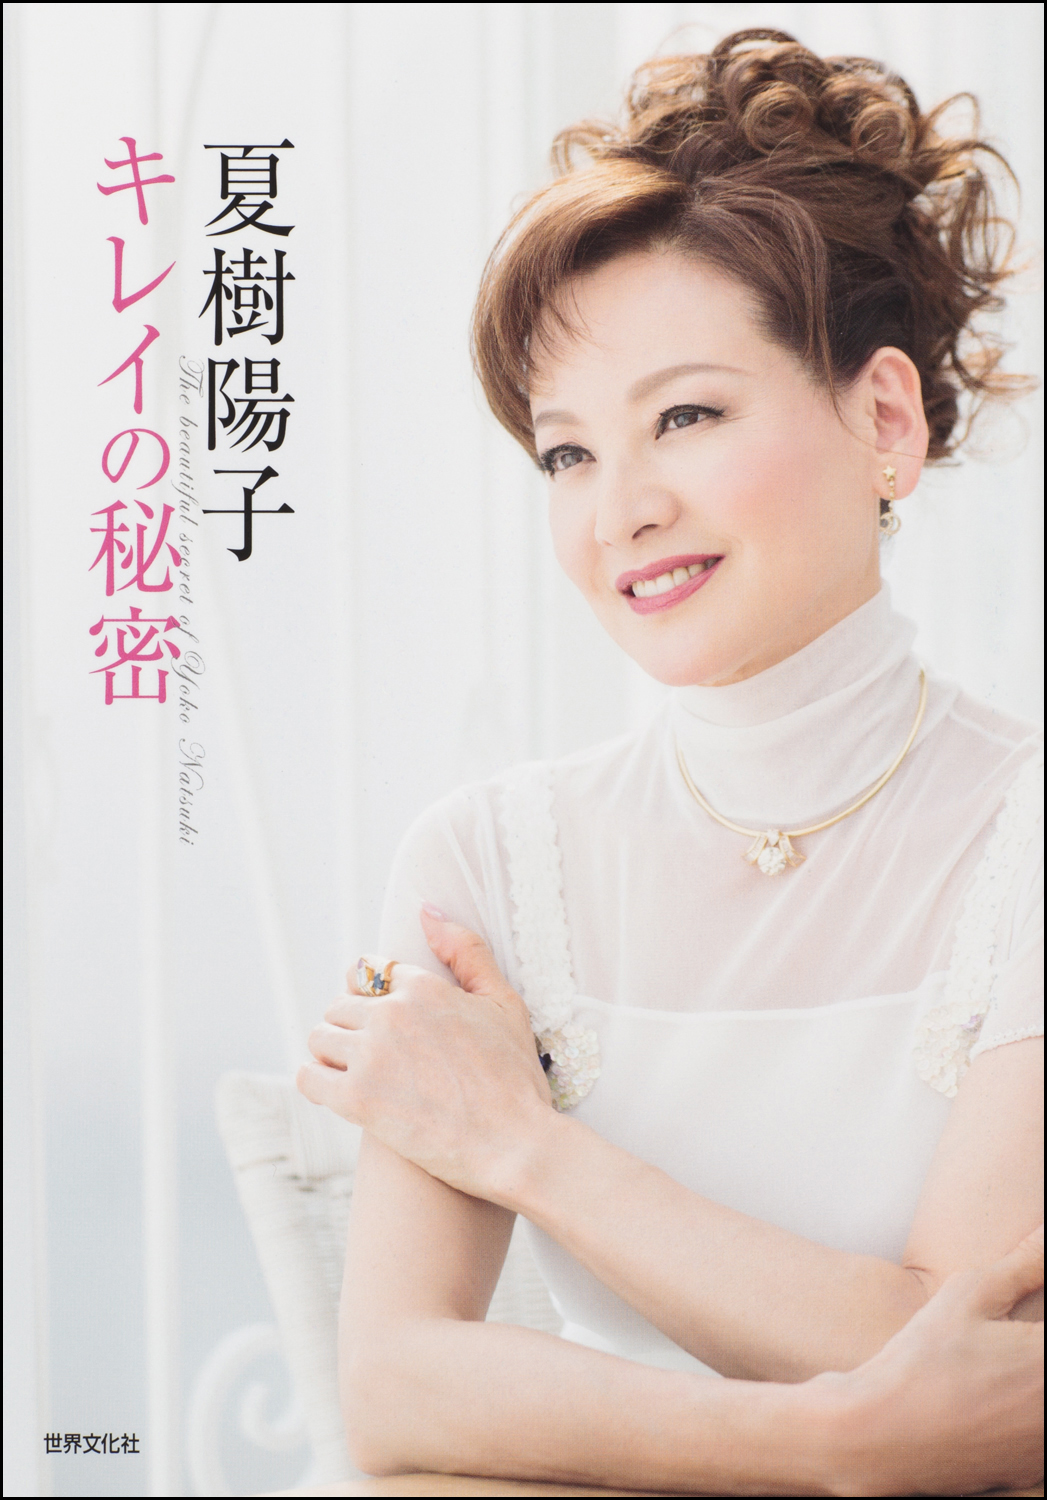 美熟女 女優 夏樹陽子に学ぶ ２０歳のプロポーションを６０歳を過ぎても保つ方法 株式会社世界文化ホールディングスのプレスリリース